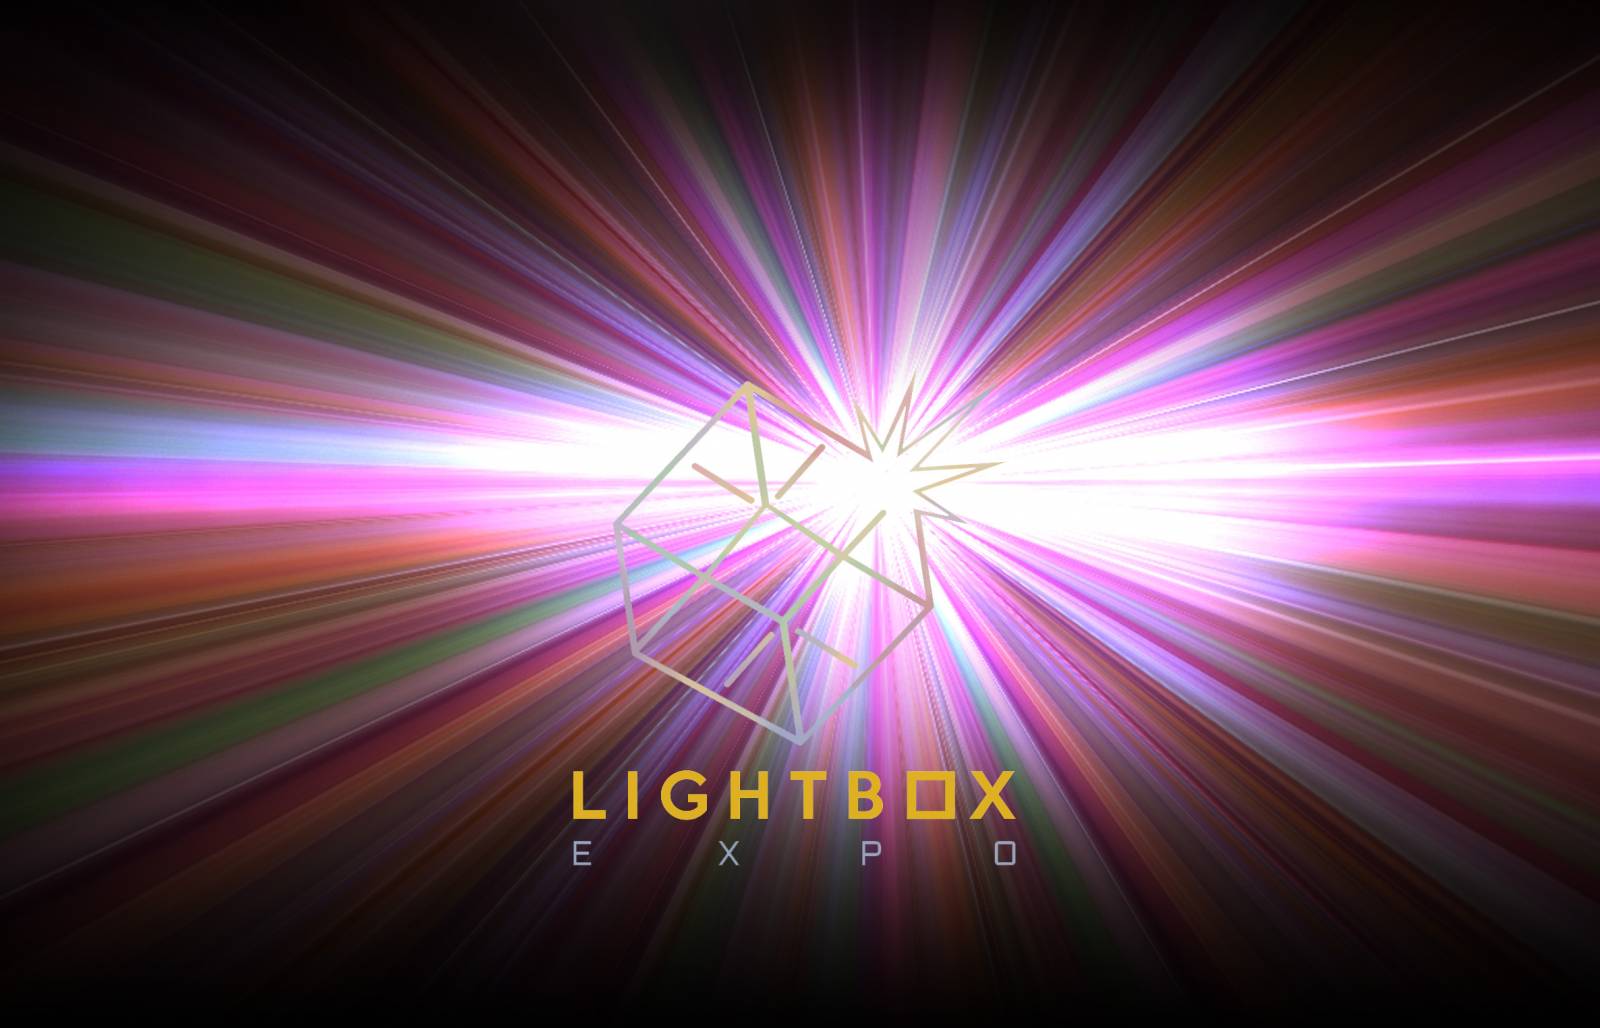 Lightbox excitebox